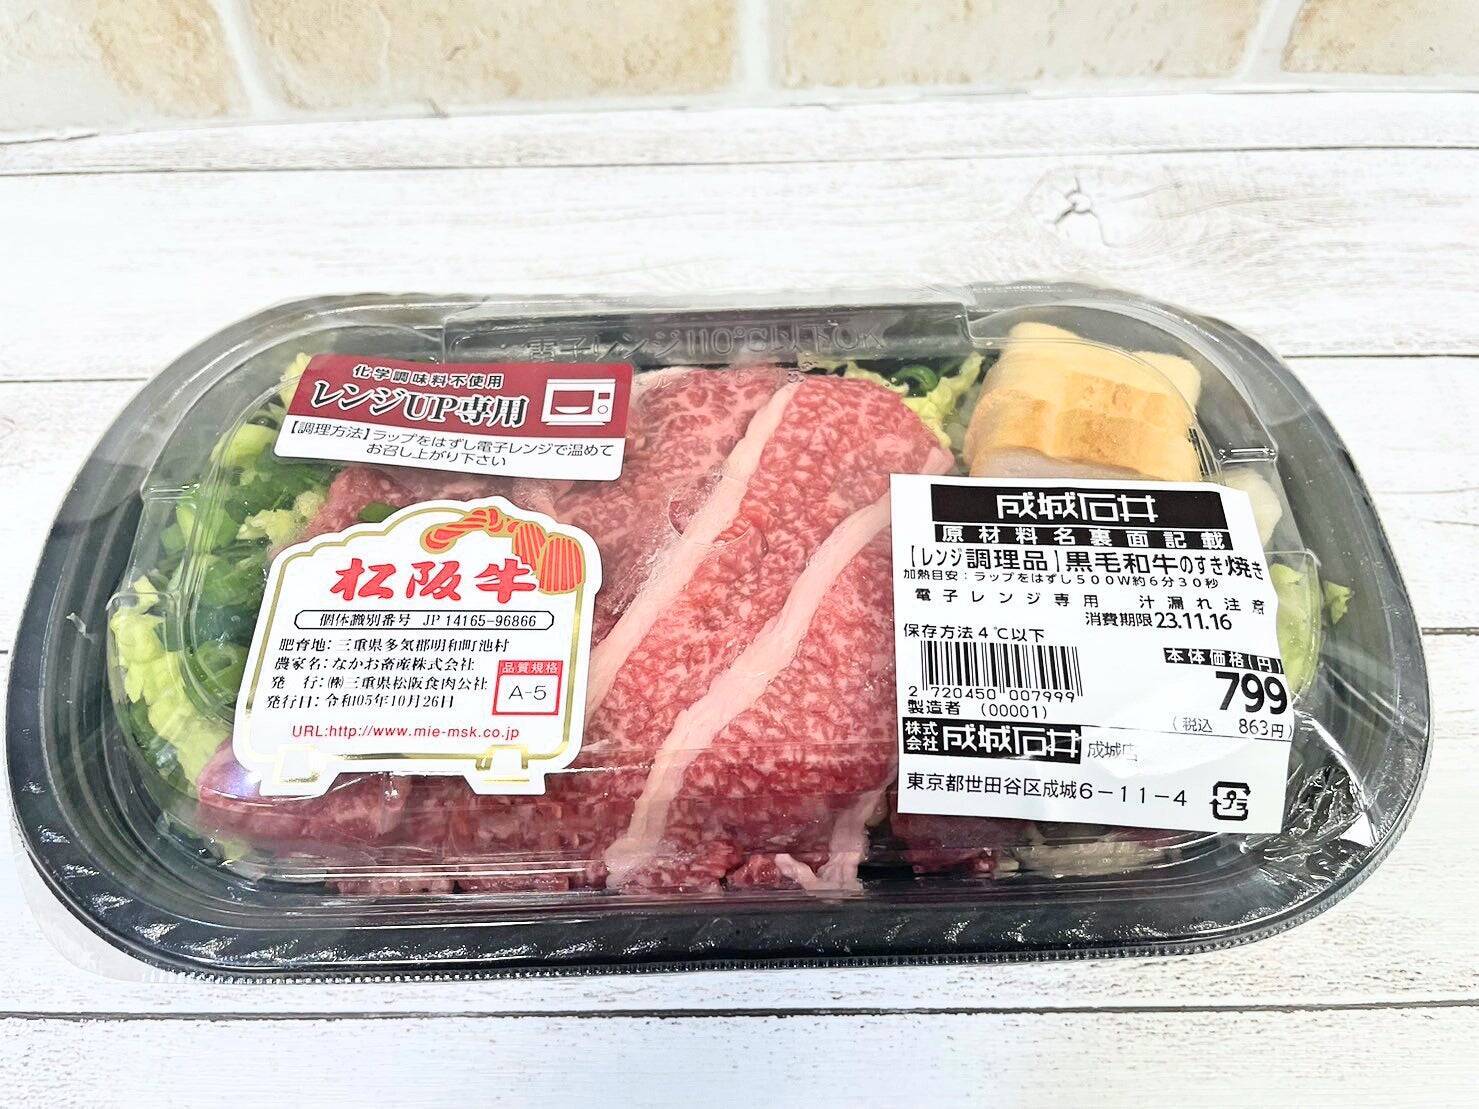 スーパーマーケット成城石井の発祥の地「成城店」に行ってきた！